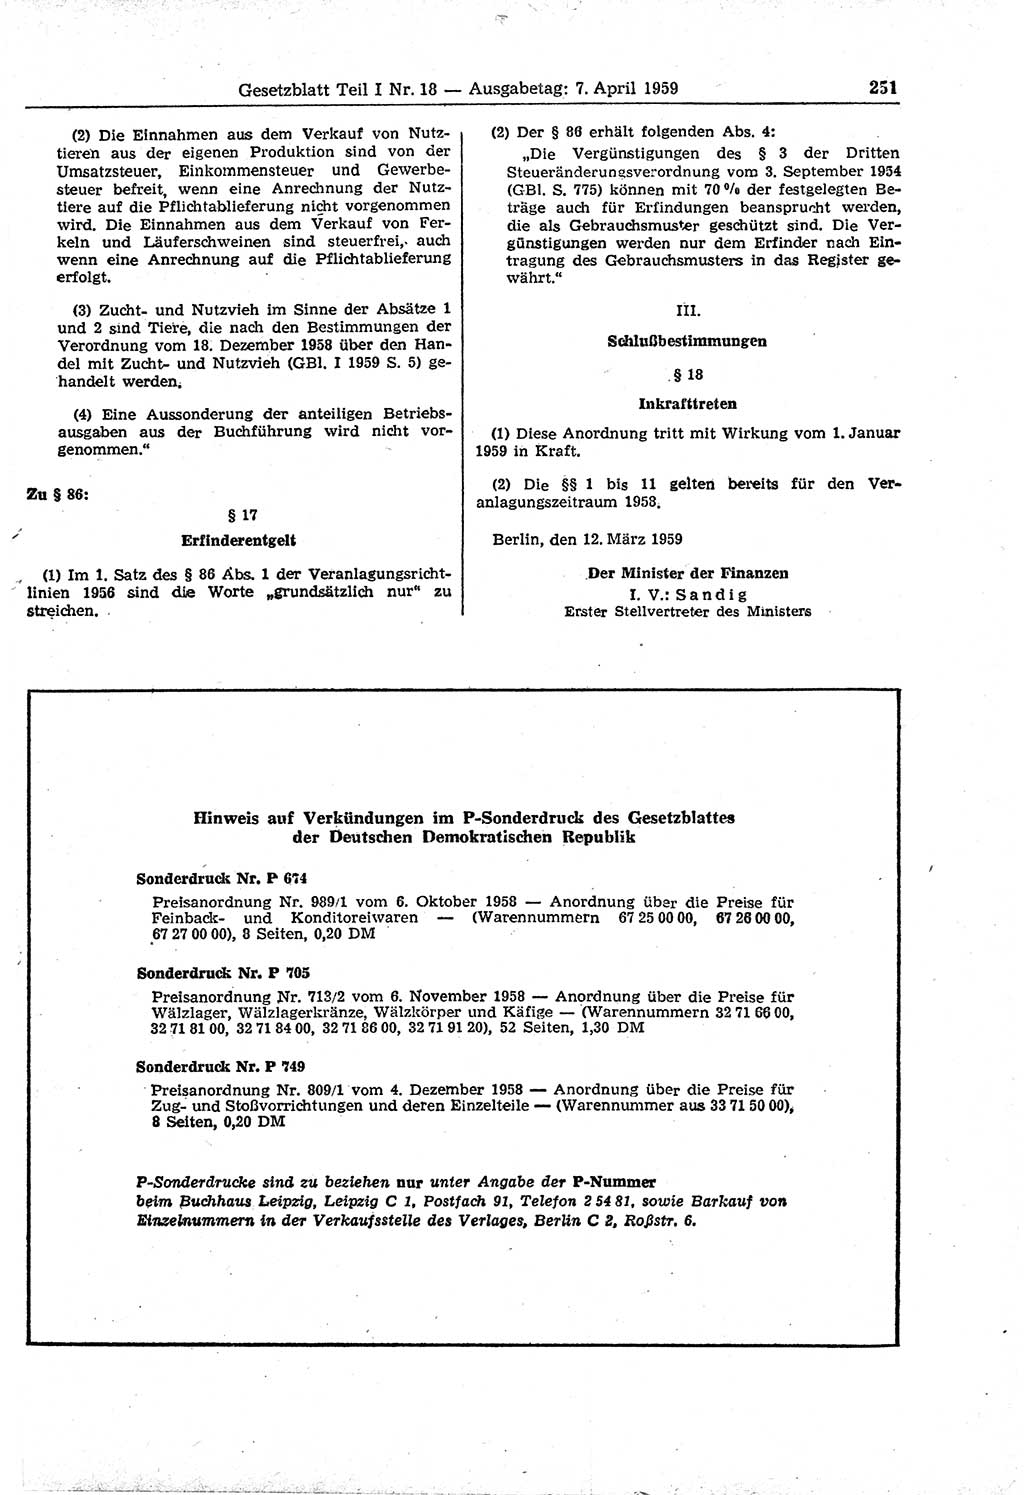 Gesetzblatt (GBl.) der Deutschen Demokratischen Republik (DDR) Teil Ⅰ 1959, Seite 251 (GBl. DDR Ⅰ 1959, S. 251)